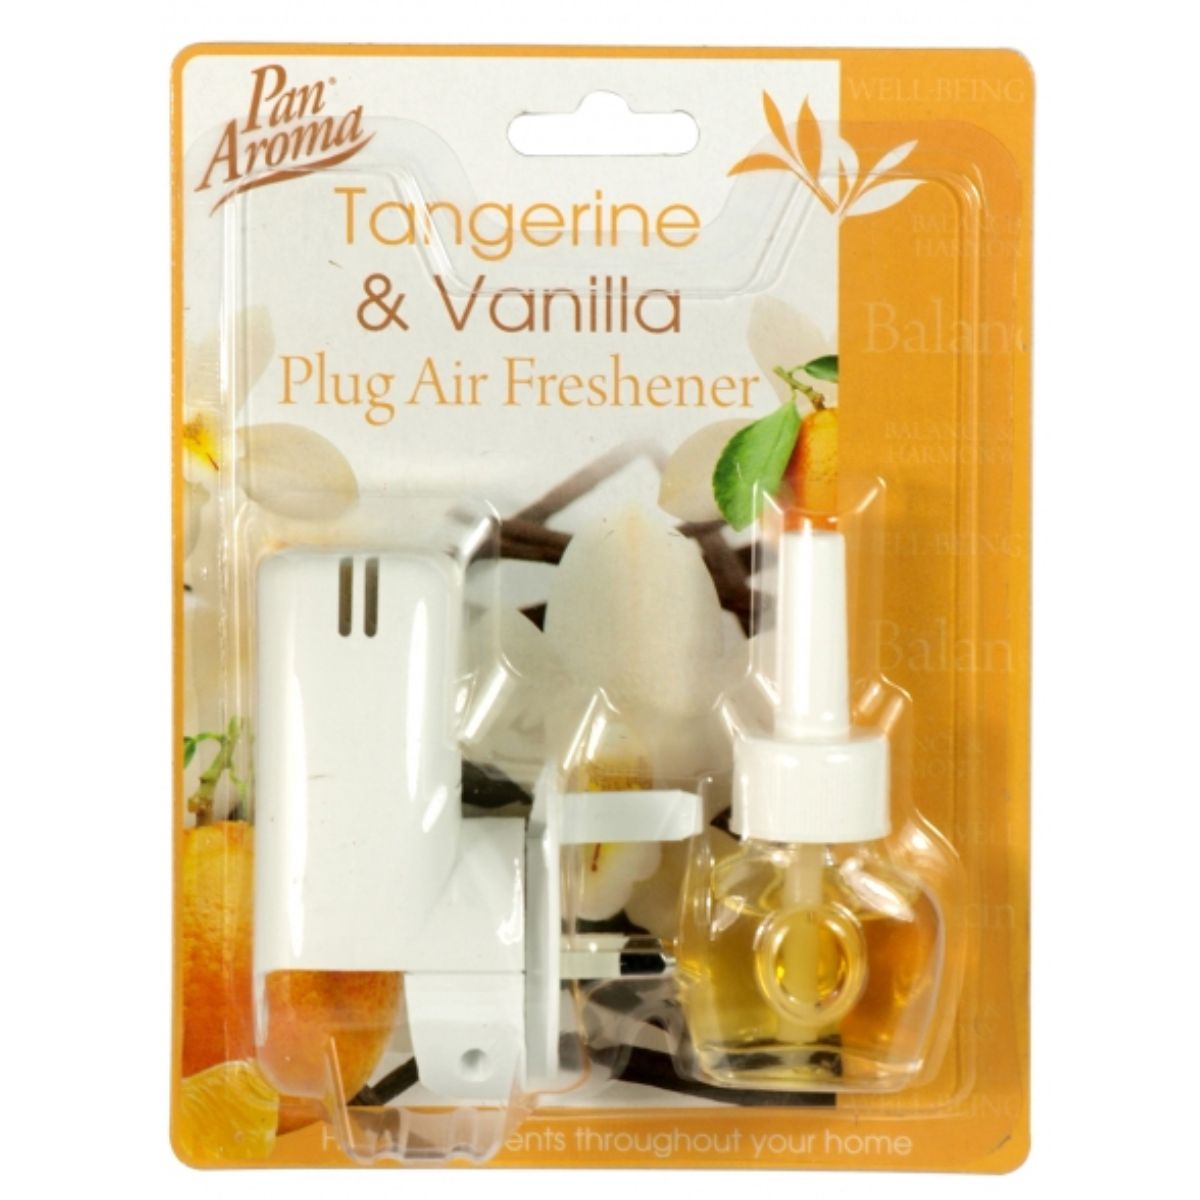 Pan Aroma - Tangerine & Vanilla Plug In Air Freshener - 1pcs.